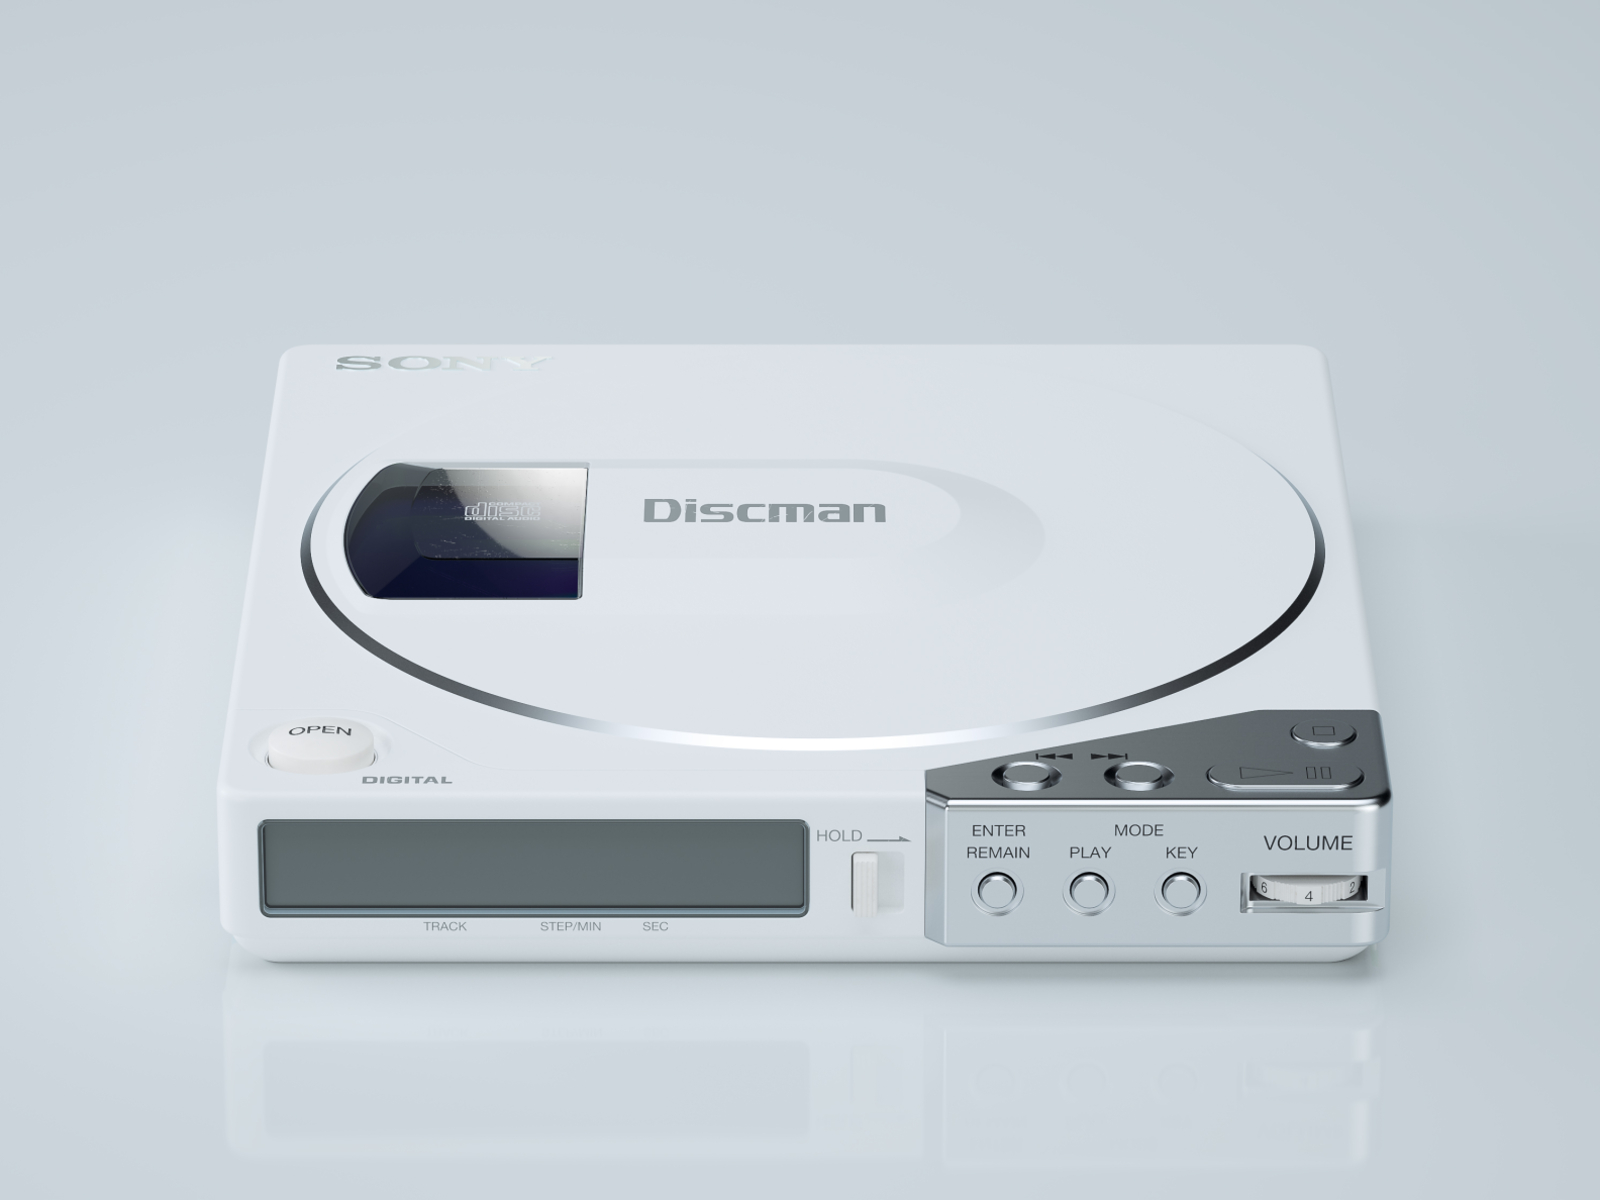 Sony Discman D-150: I by Jason Zigrino on Dribbble